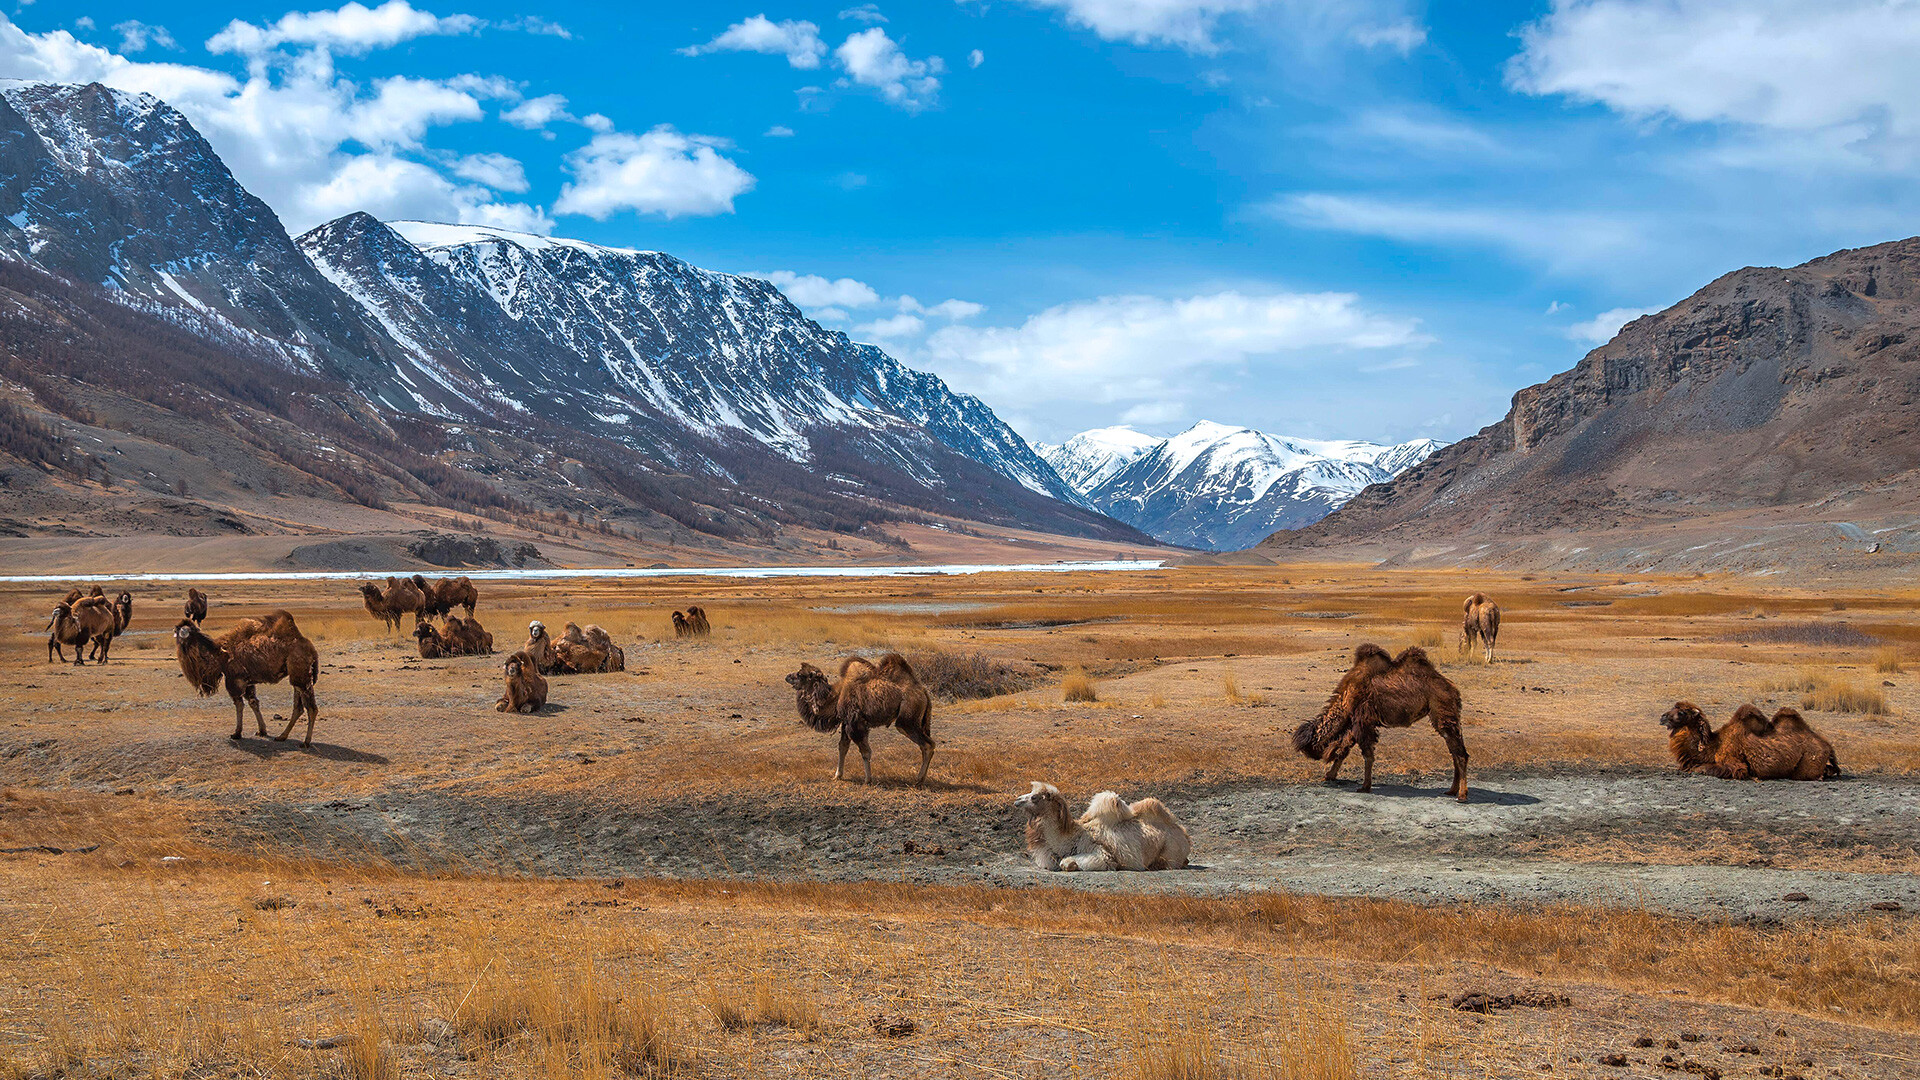 Slikovita spomladanska pokrajina s čredo prikupnih kamel, ki se pasejo v stepi z zasneženimi gorami, modrim nebom in oblaki v ozadju. Altaj, Rusija 